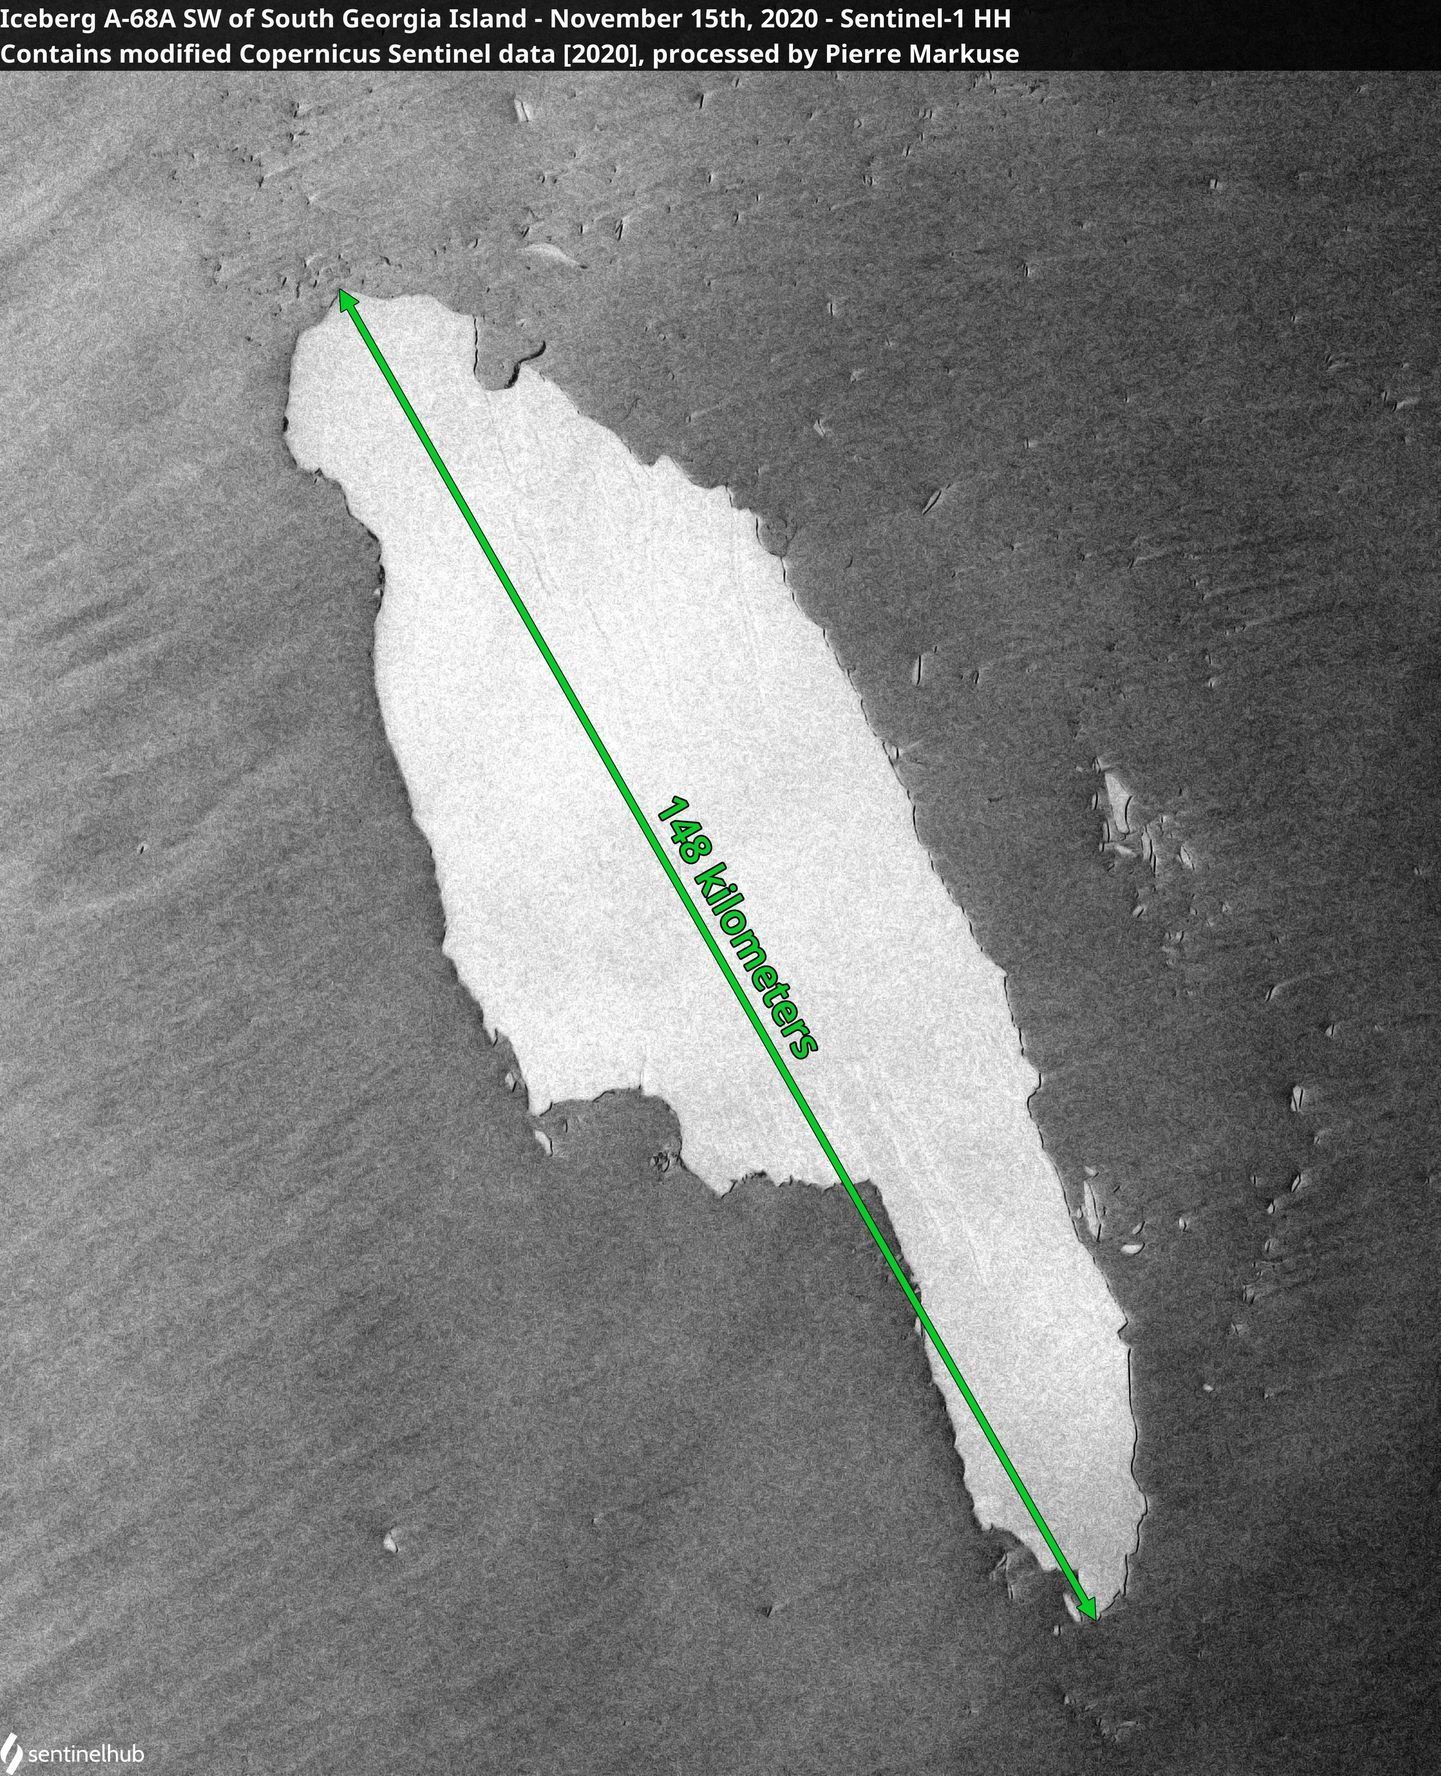 Pohyb ledovce A-68A zachycený družicí Sentinel-1.